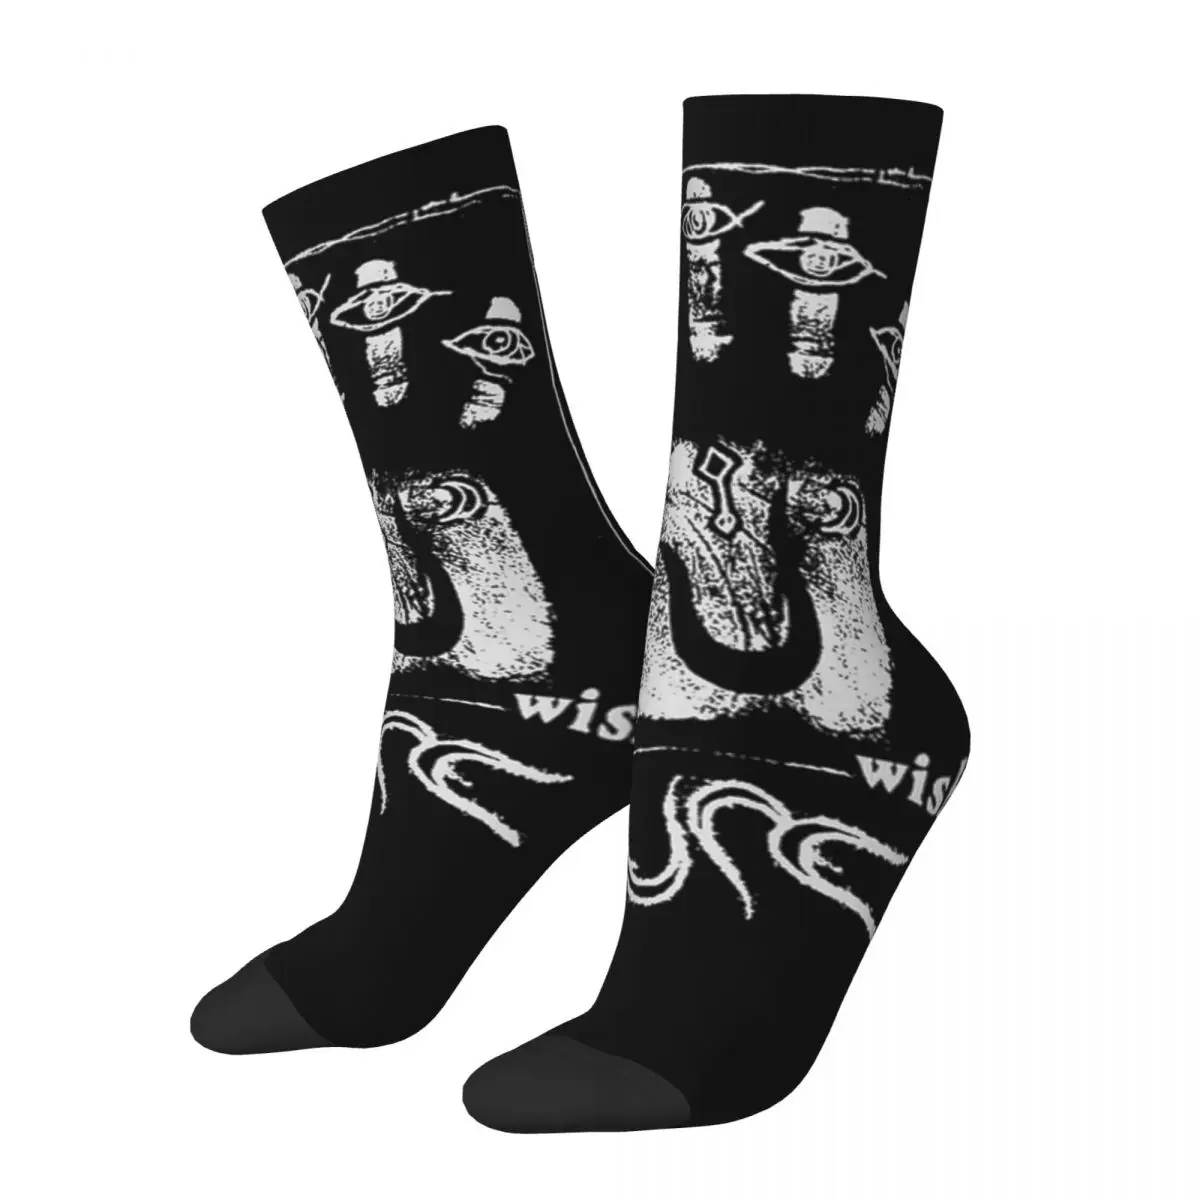 

Модные мужские и мужские носки Crazy The Cure Band носки с пятью пальцами из полиэстера для музыкальной группы спортивные женские носки весна лето осень зима